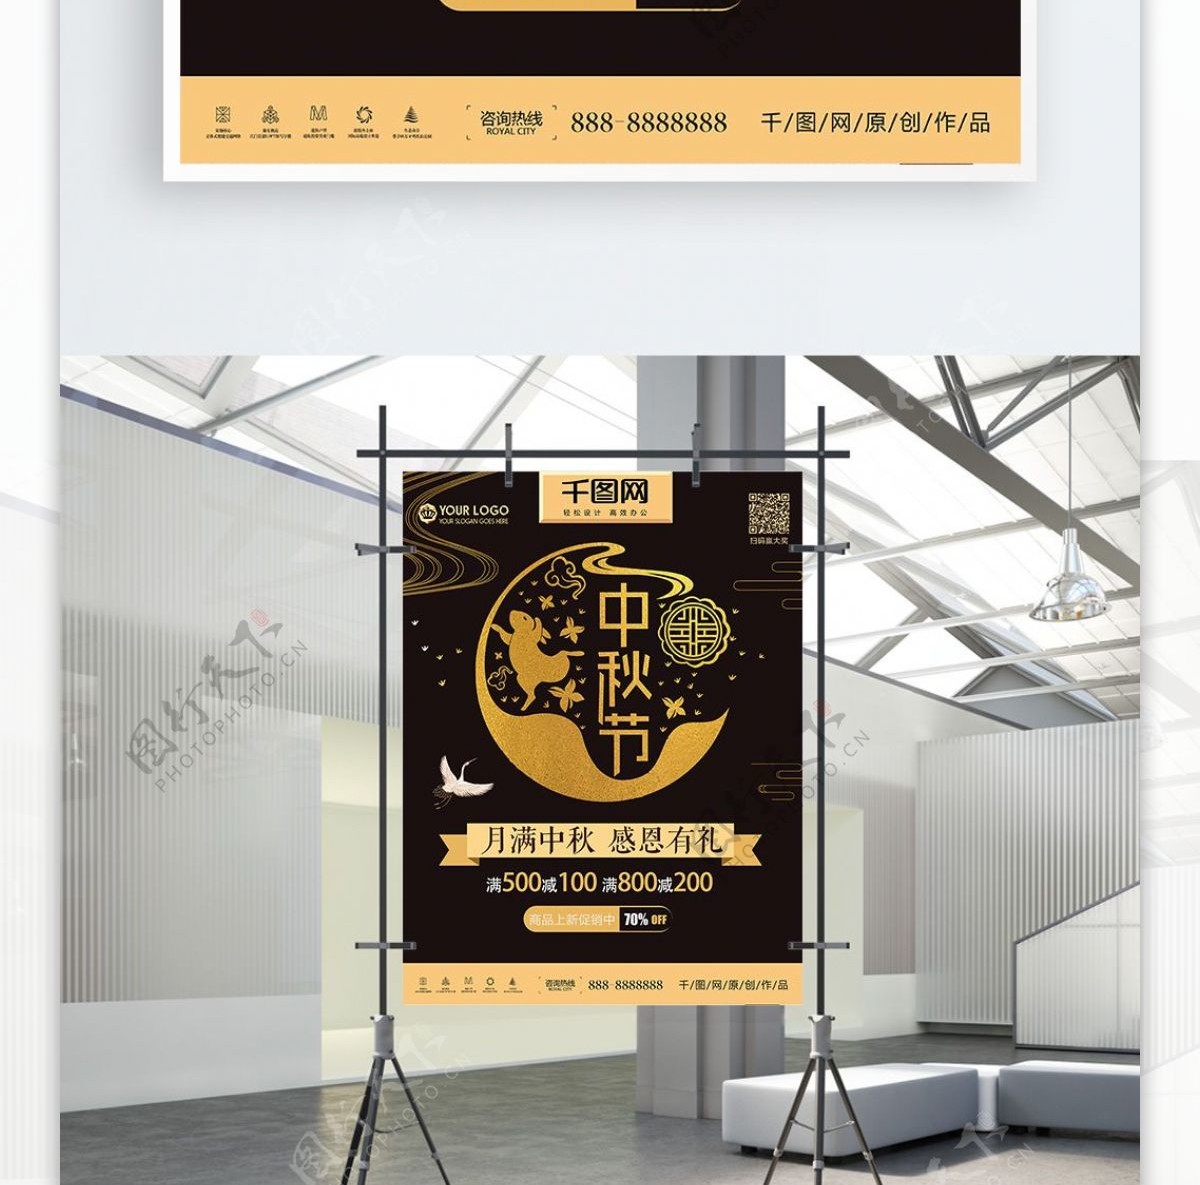 创意黑金剪纸卡通中秋节商场促销海报